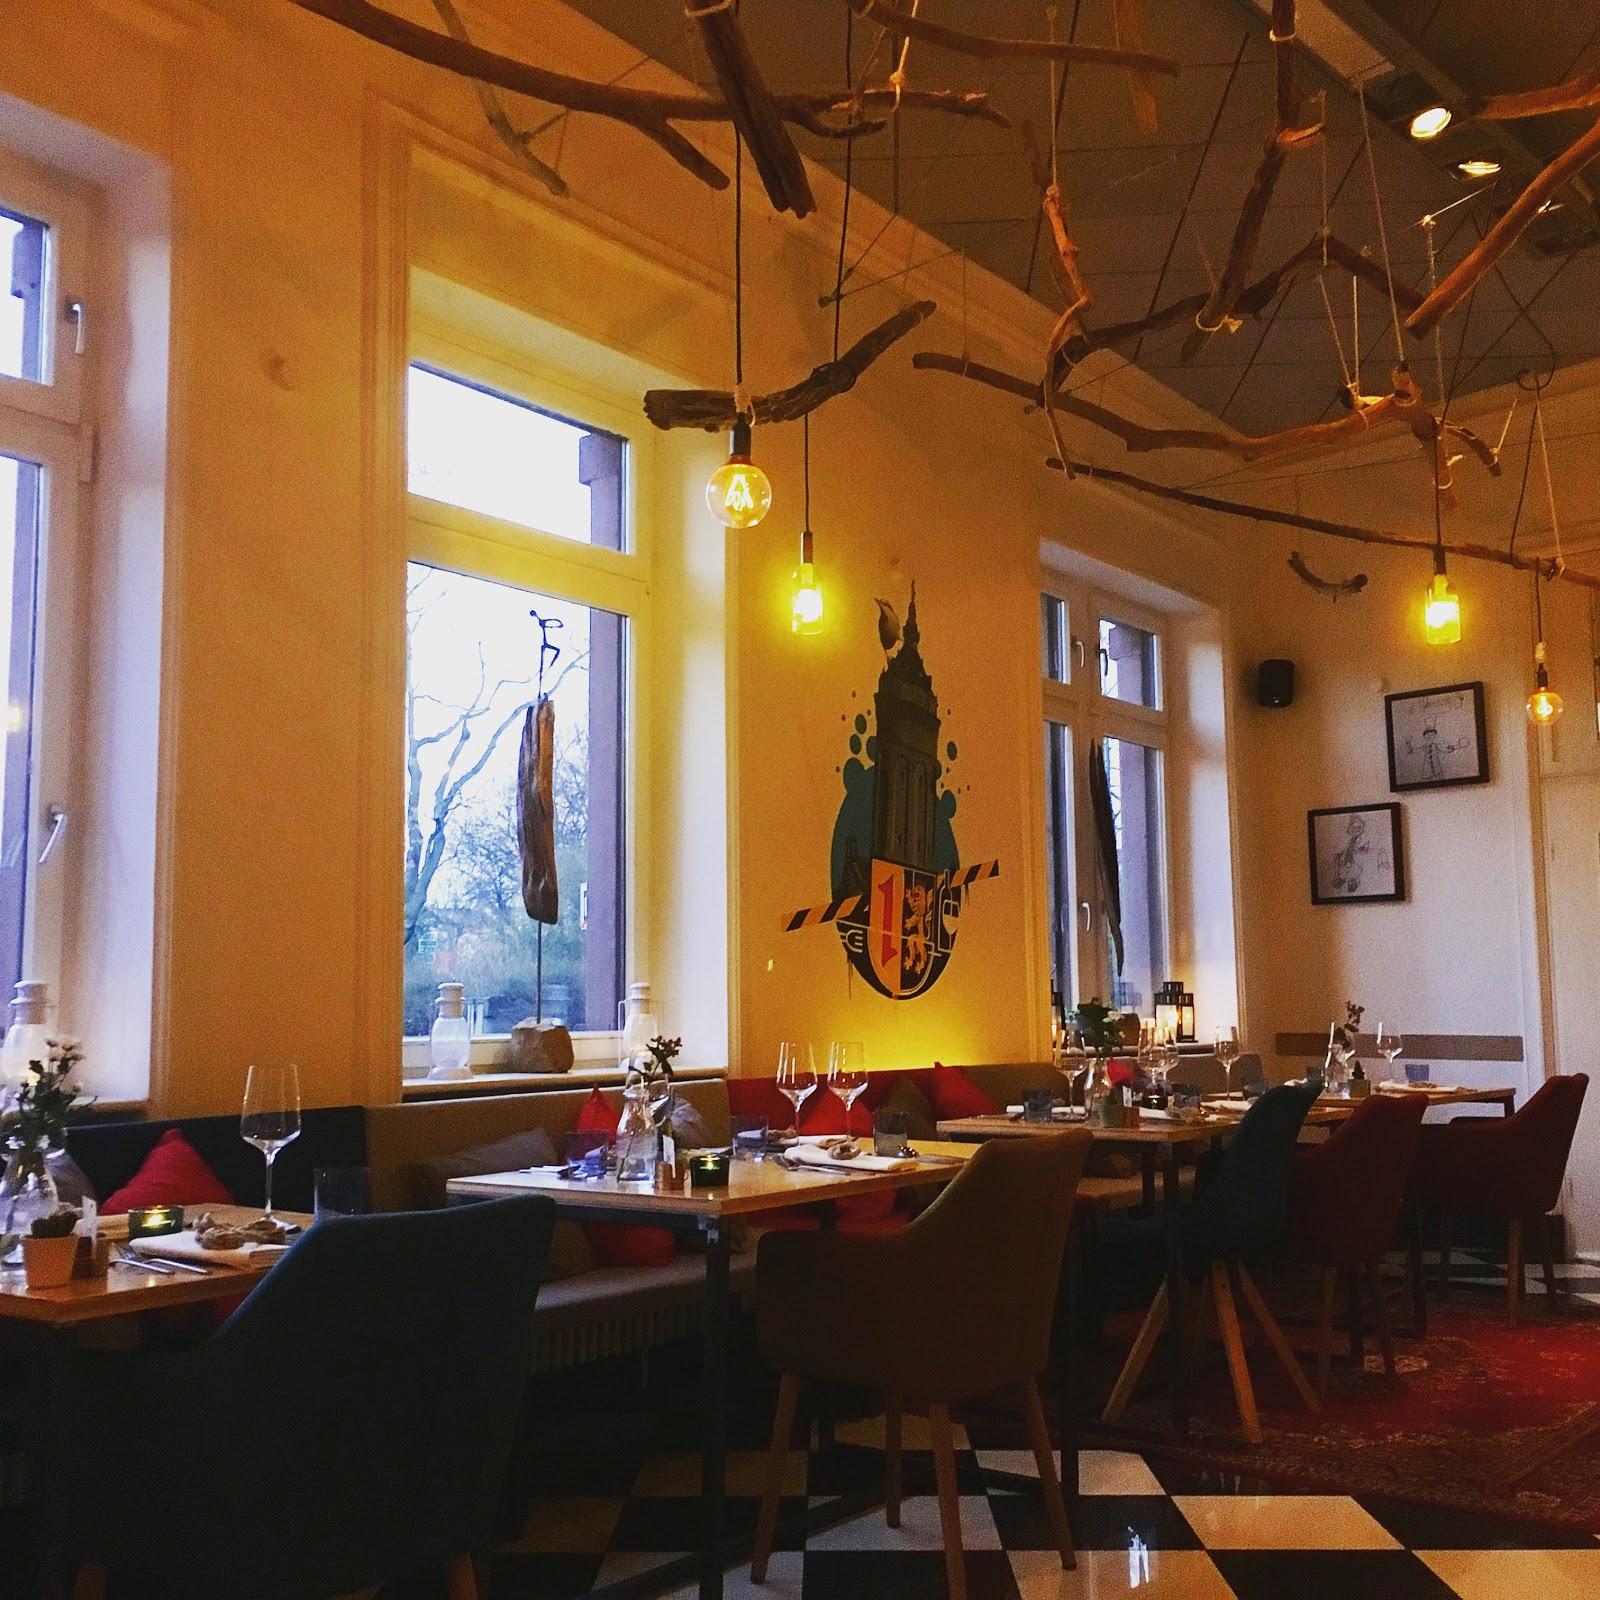 Restaurant "Fundament Restaurant" in  Mannheim